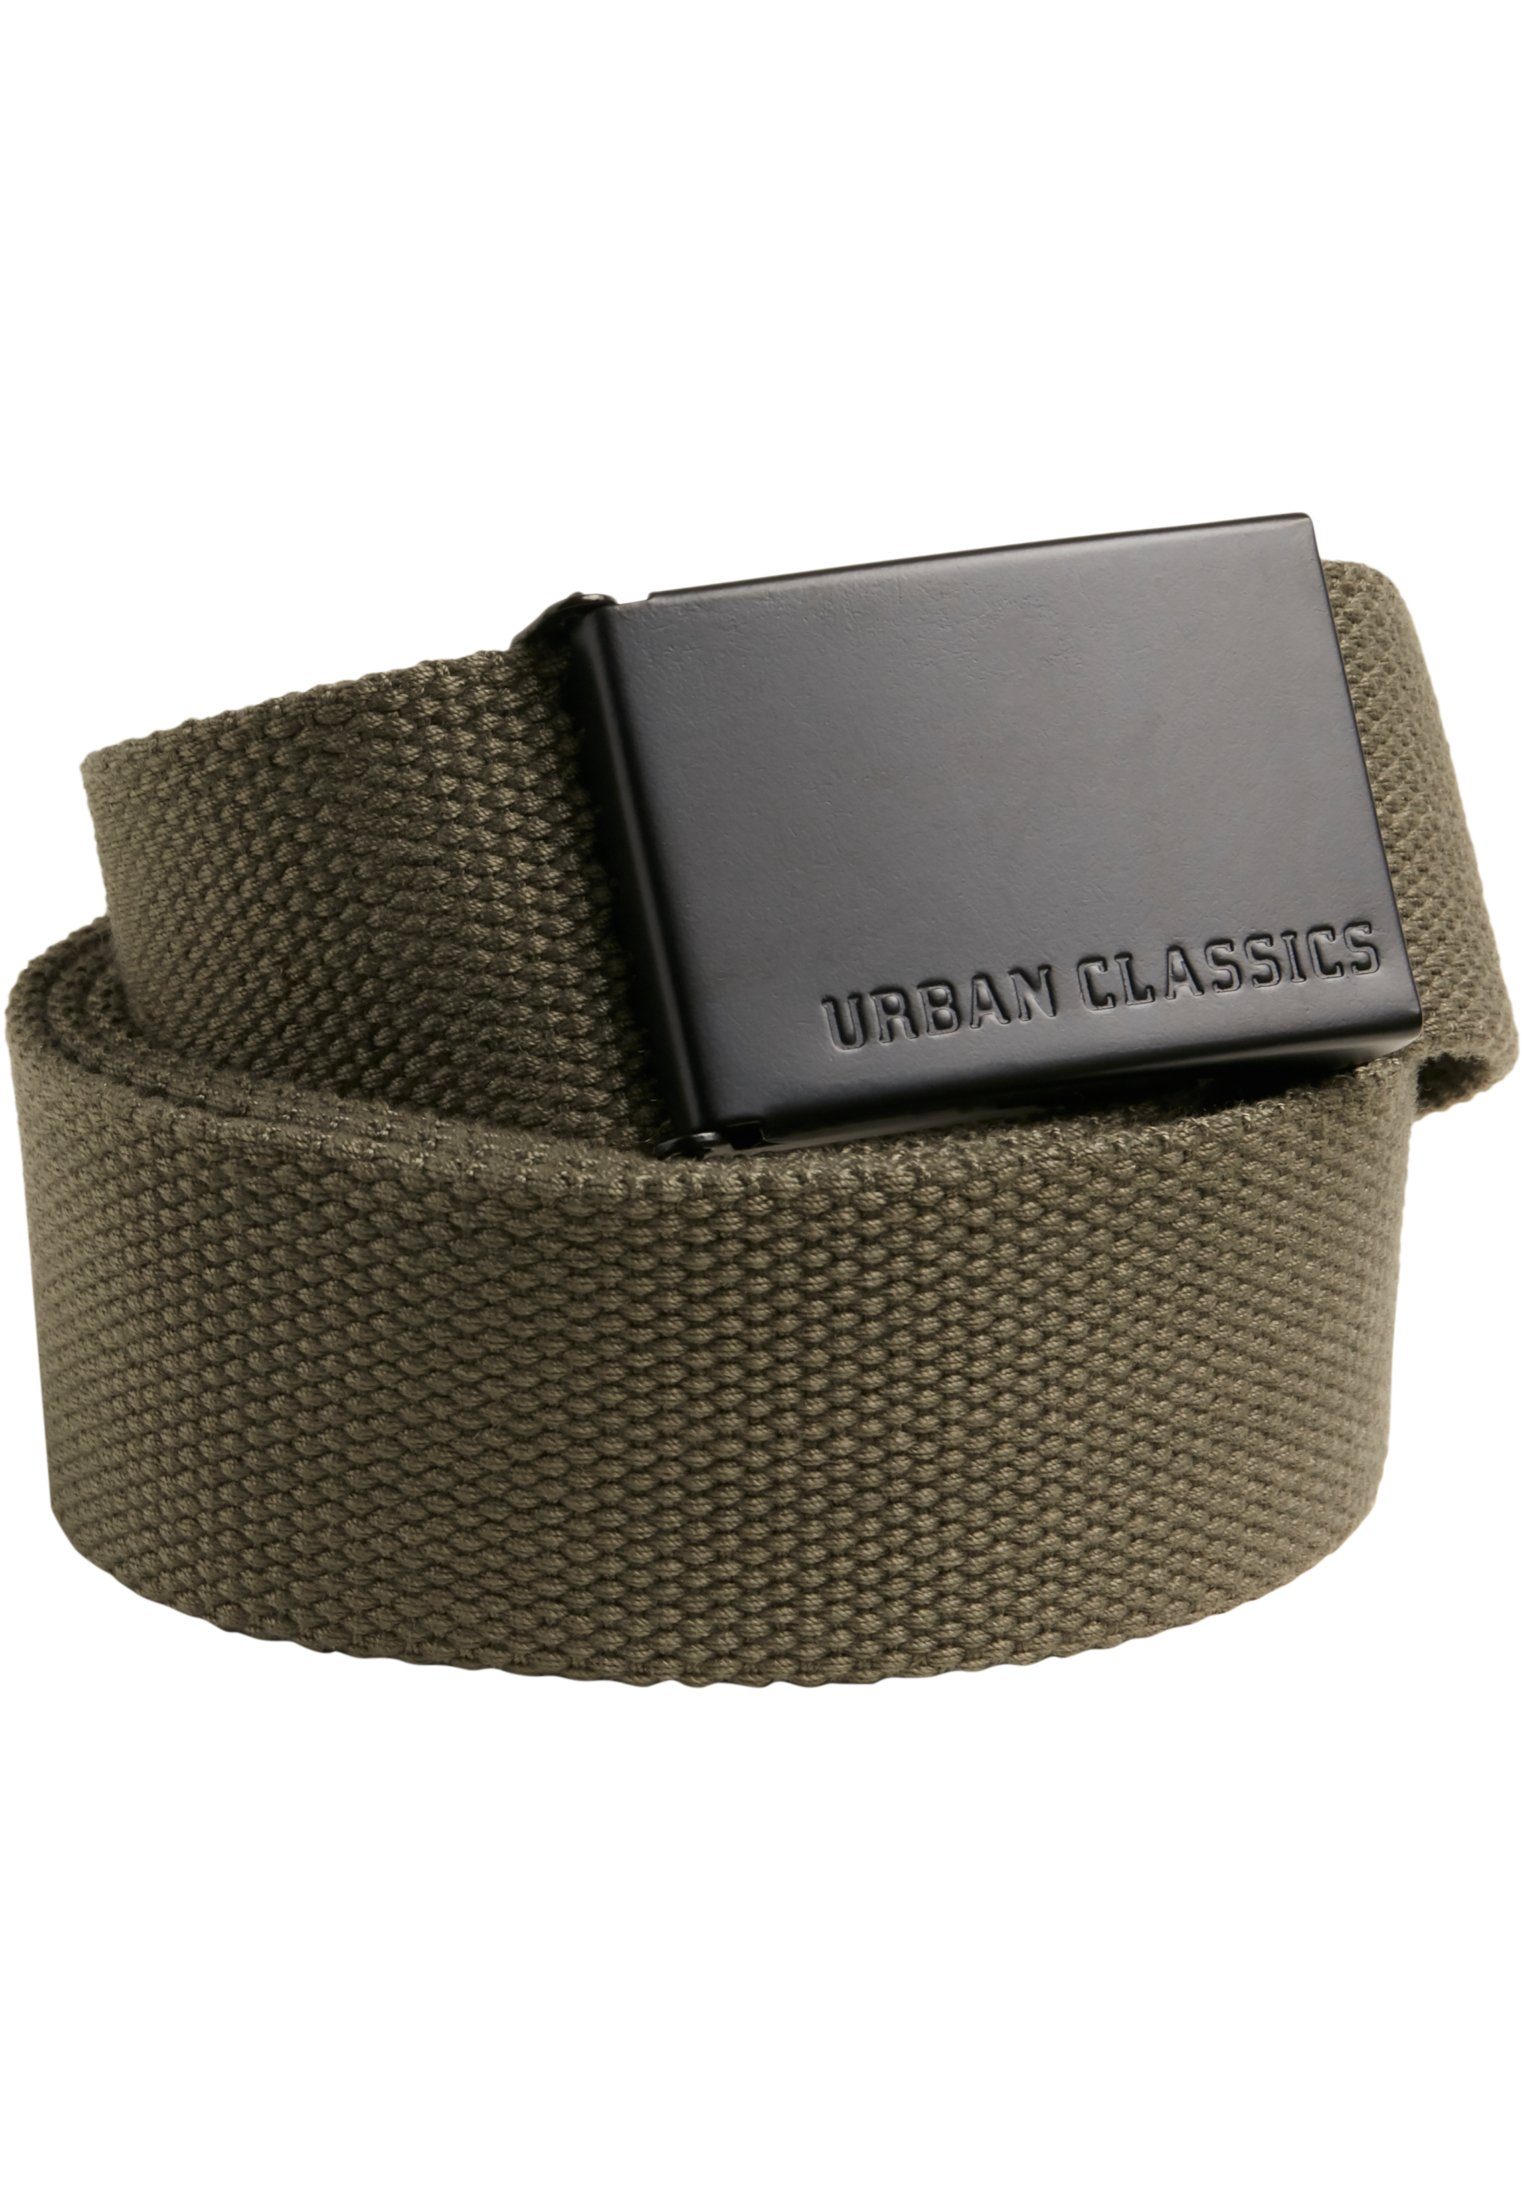 Hüftgürtel Accessoires olive-black CLASSICS Canvas Belts URBAN